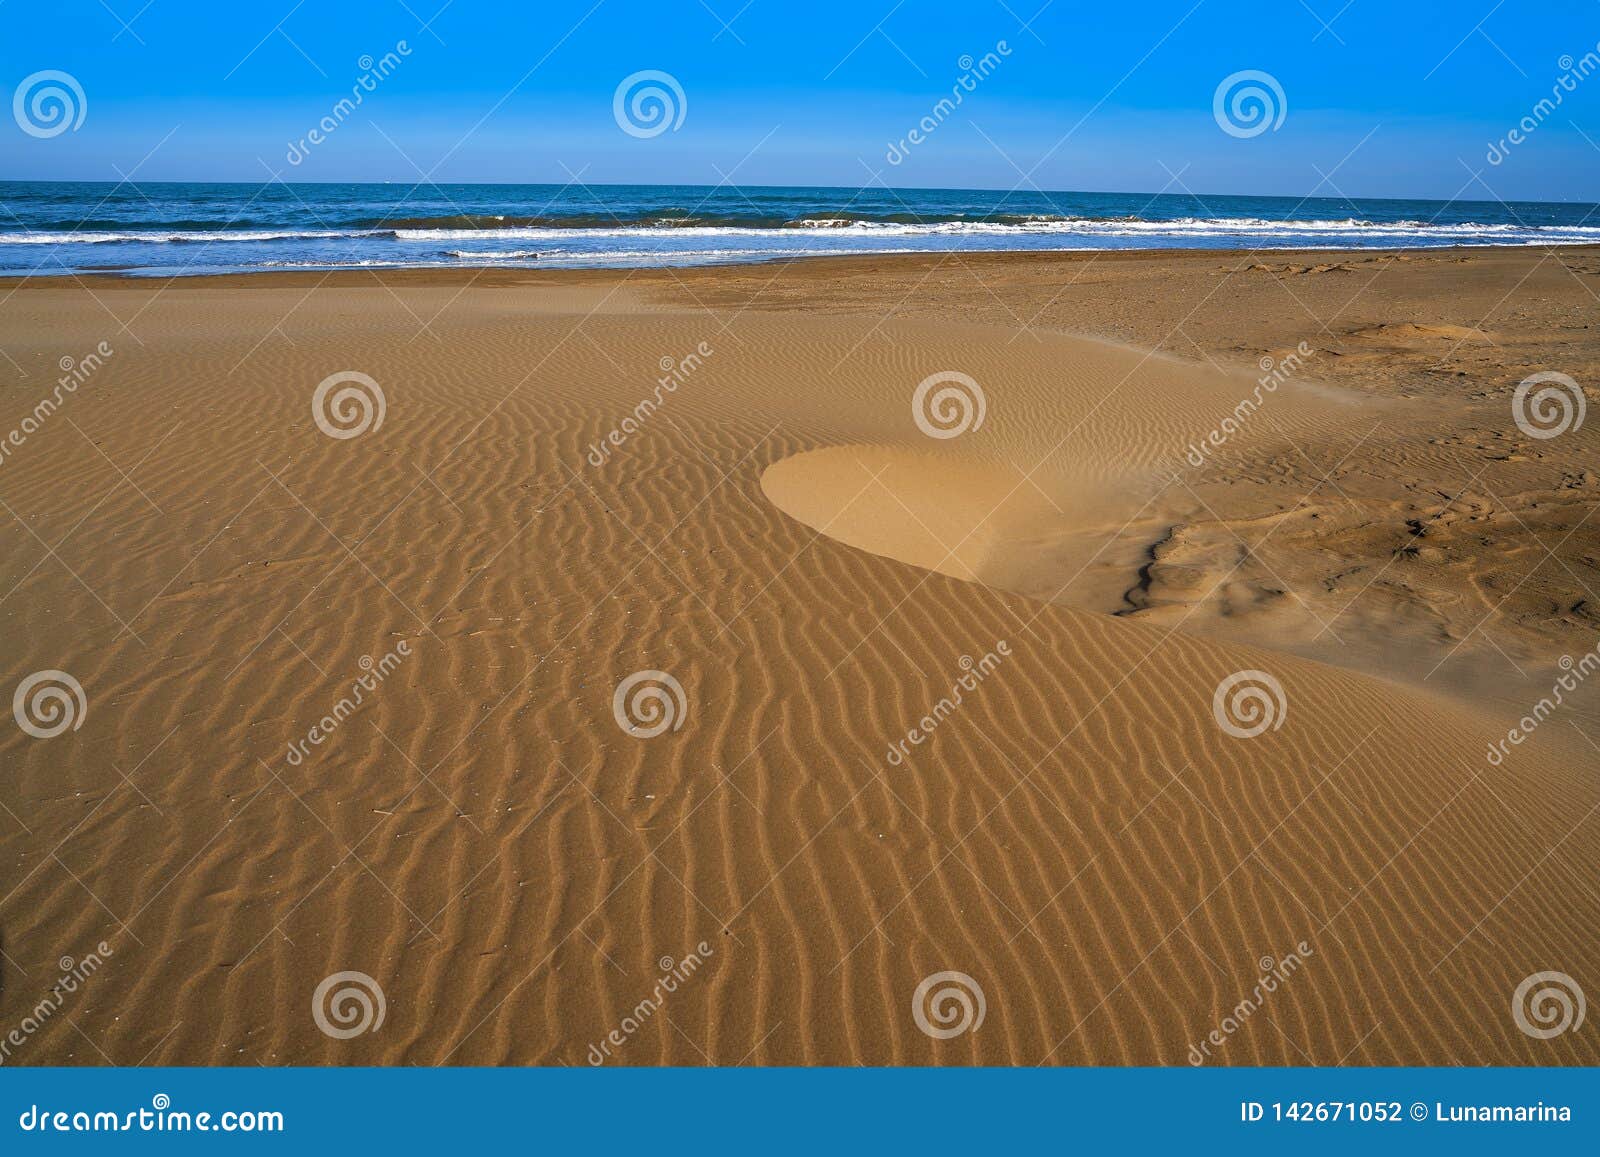 delta del ebro beach punta del fangar